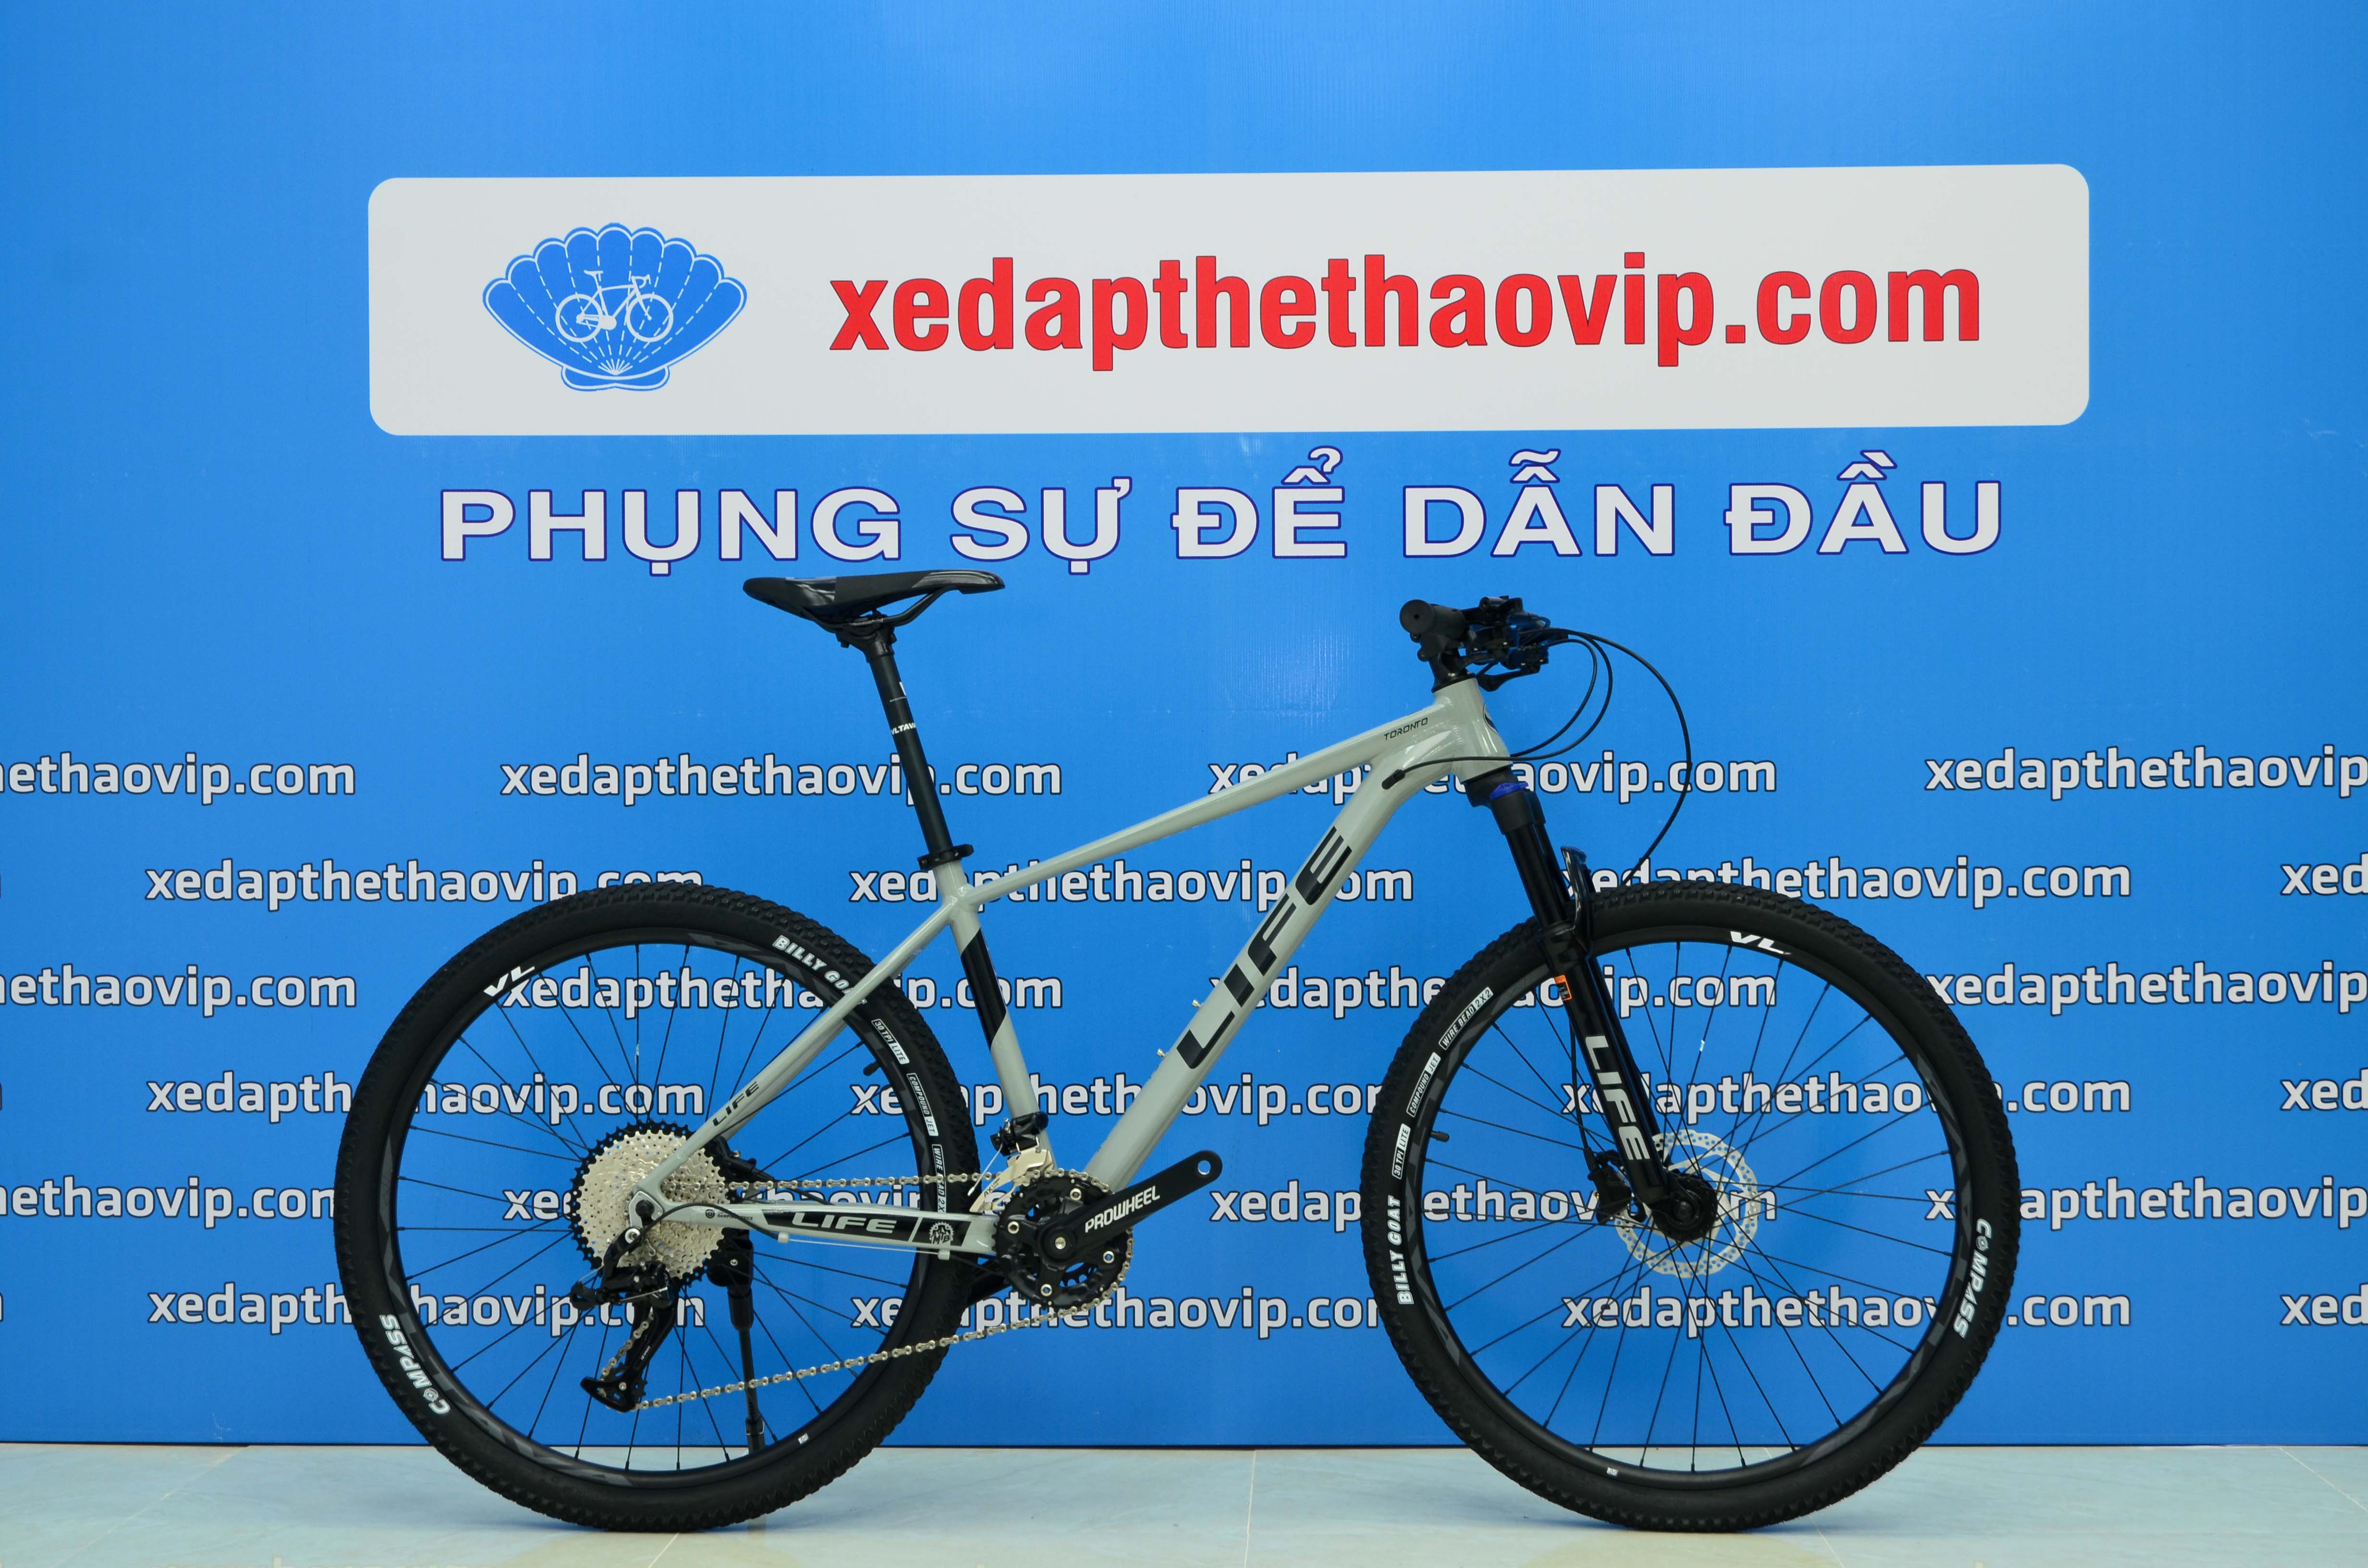 Sửa xe đạp thể thao Đà Nẵng  Cửa hàng xe đạp tại Đà Nẵng  Sửa chữa xe đạp  miễn phí  Cho thuê xe đạp địa hình Đà Nẵng 